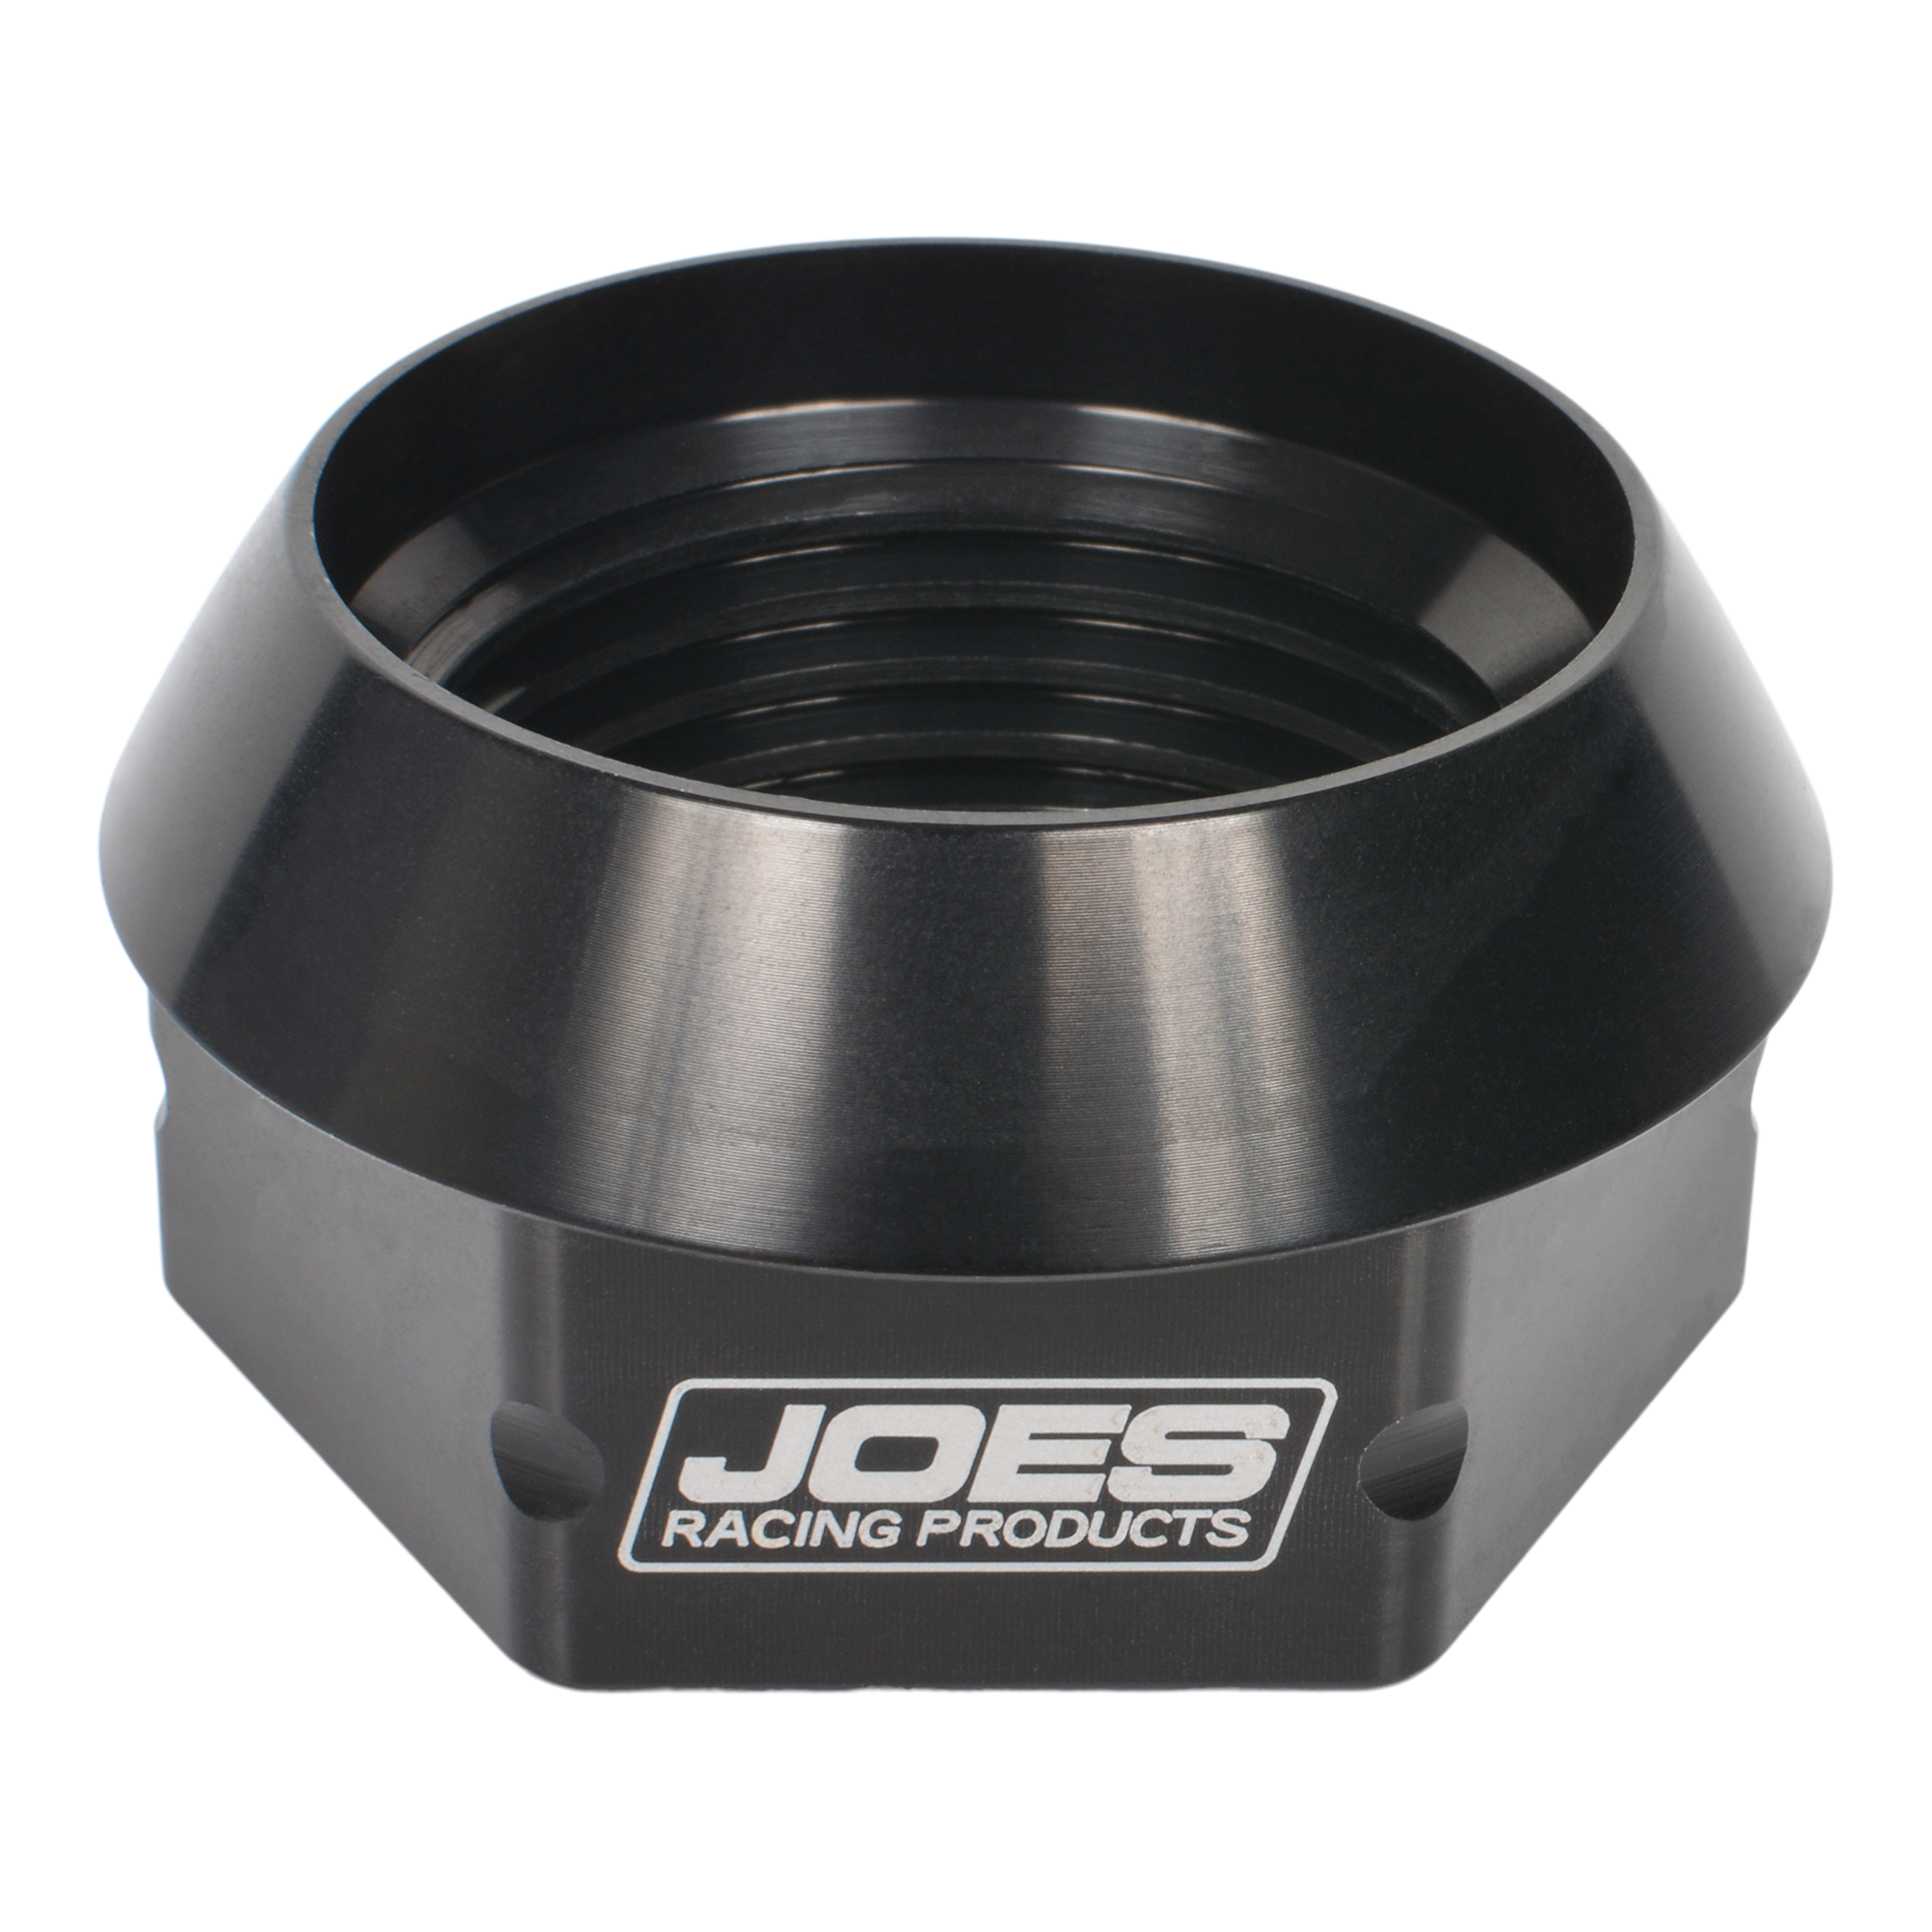 JOES Micro Sprint Rear Axle Nut - Left Hand Thread